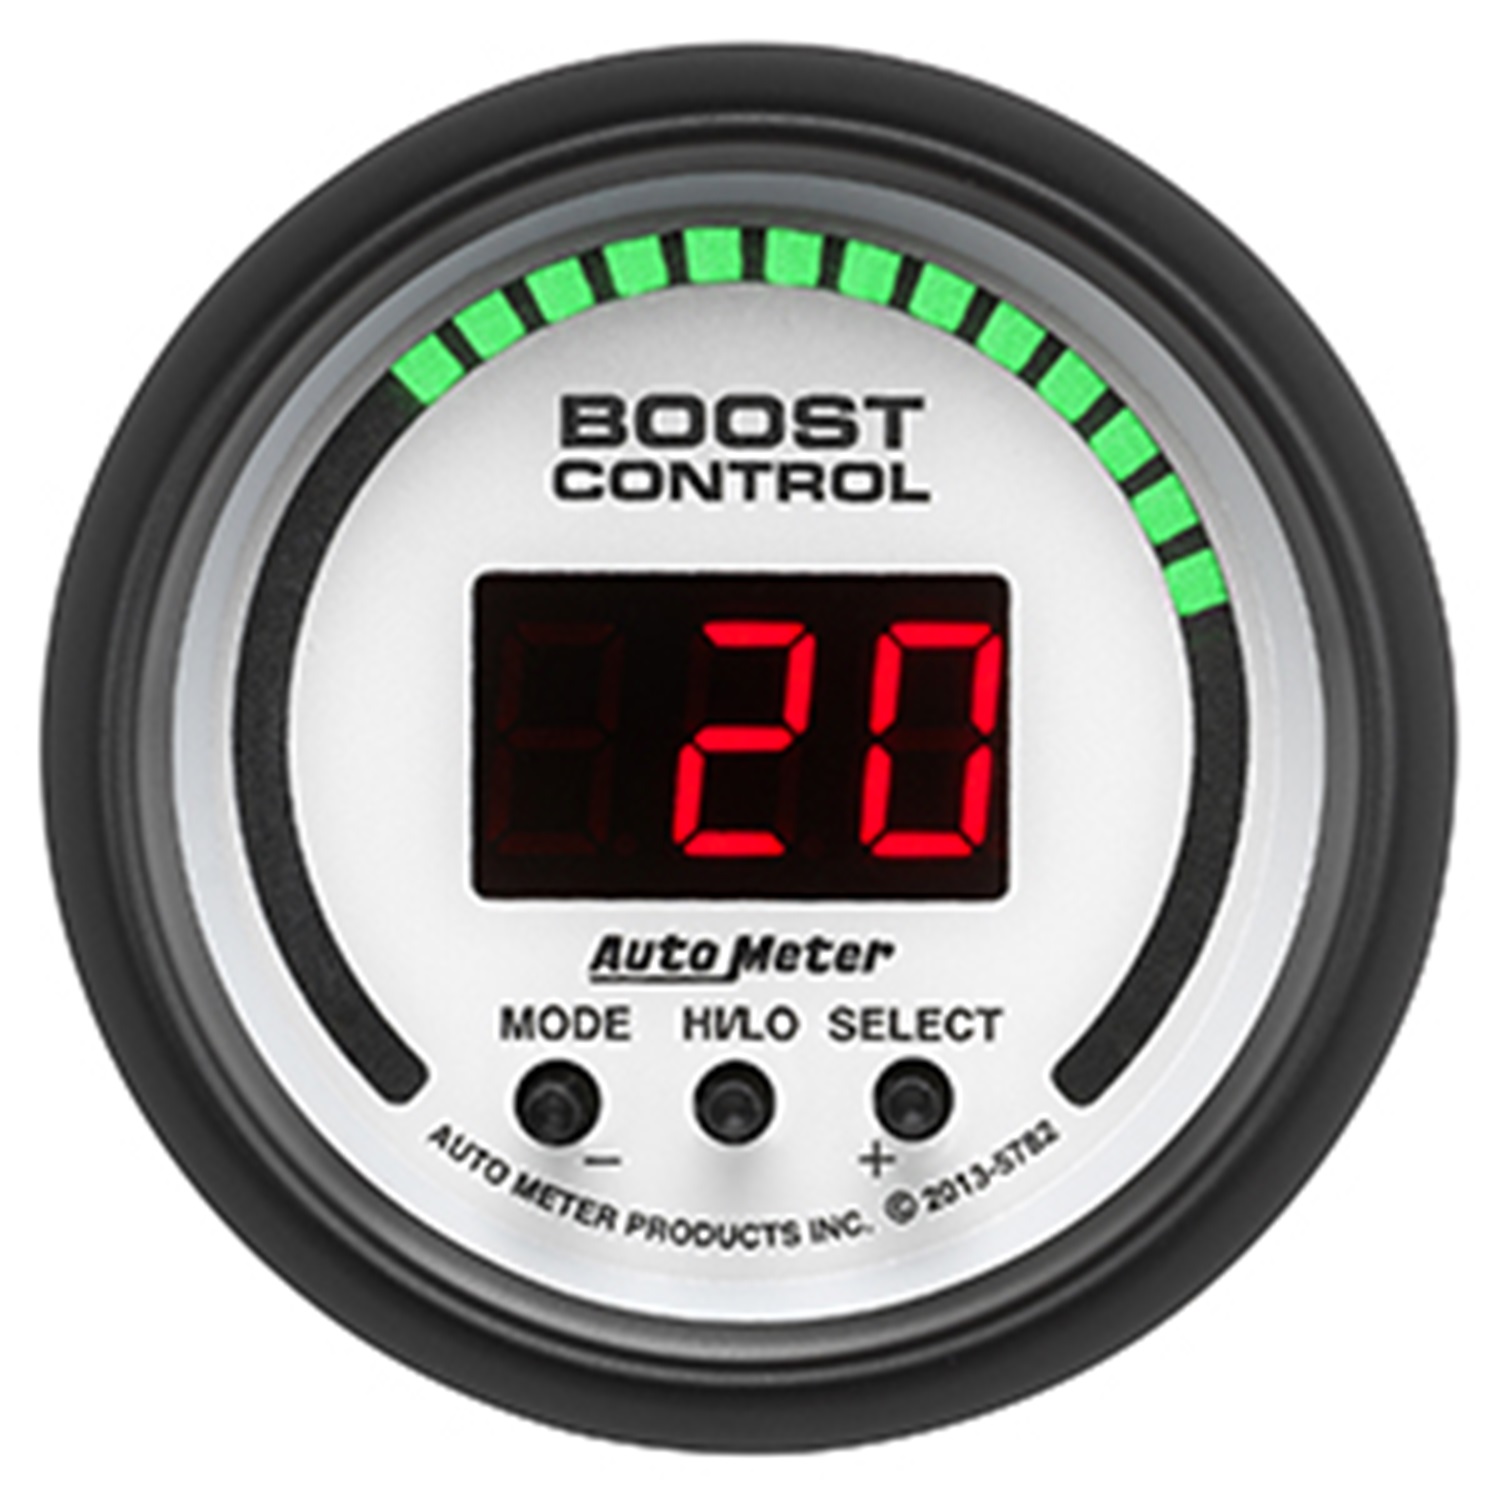 Auto Meter Auto Meter 5782 Phantom; Digital Boost Controller Gauge